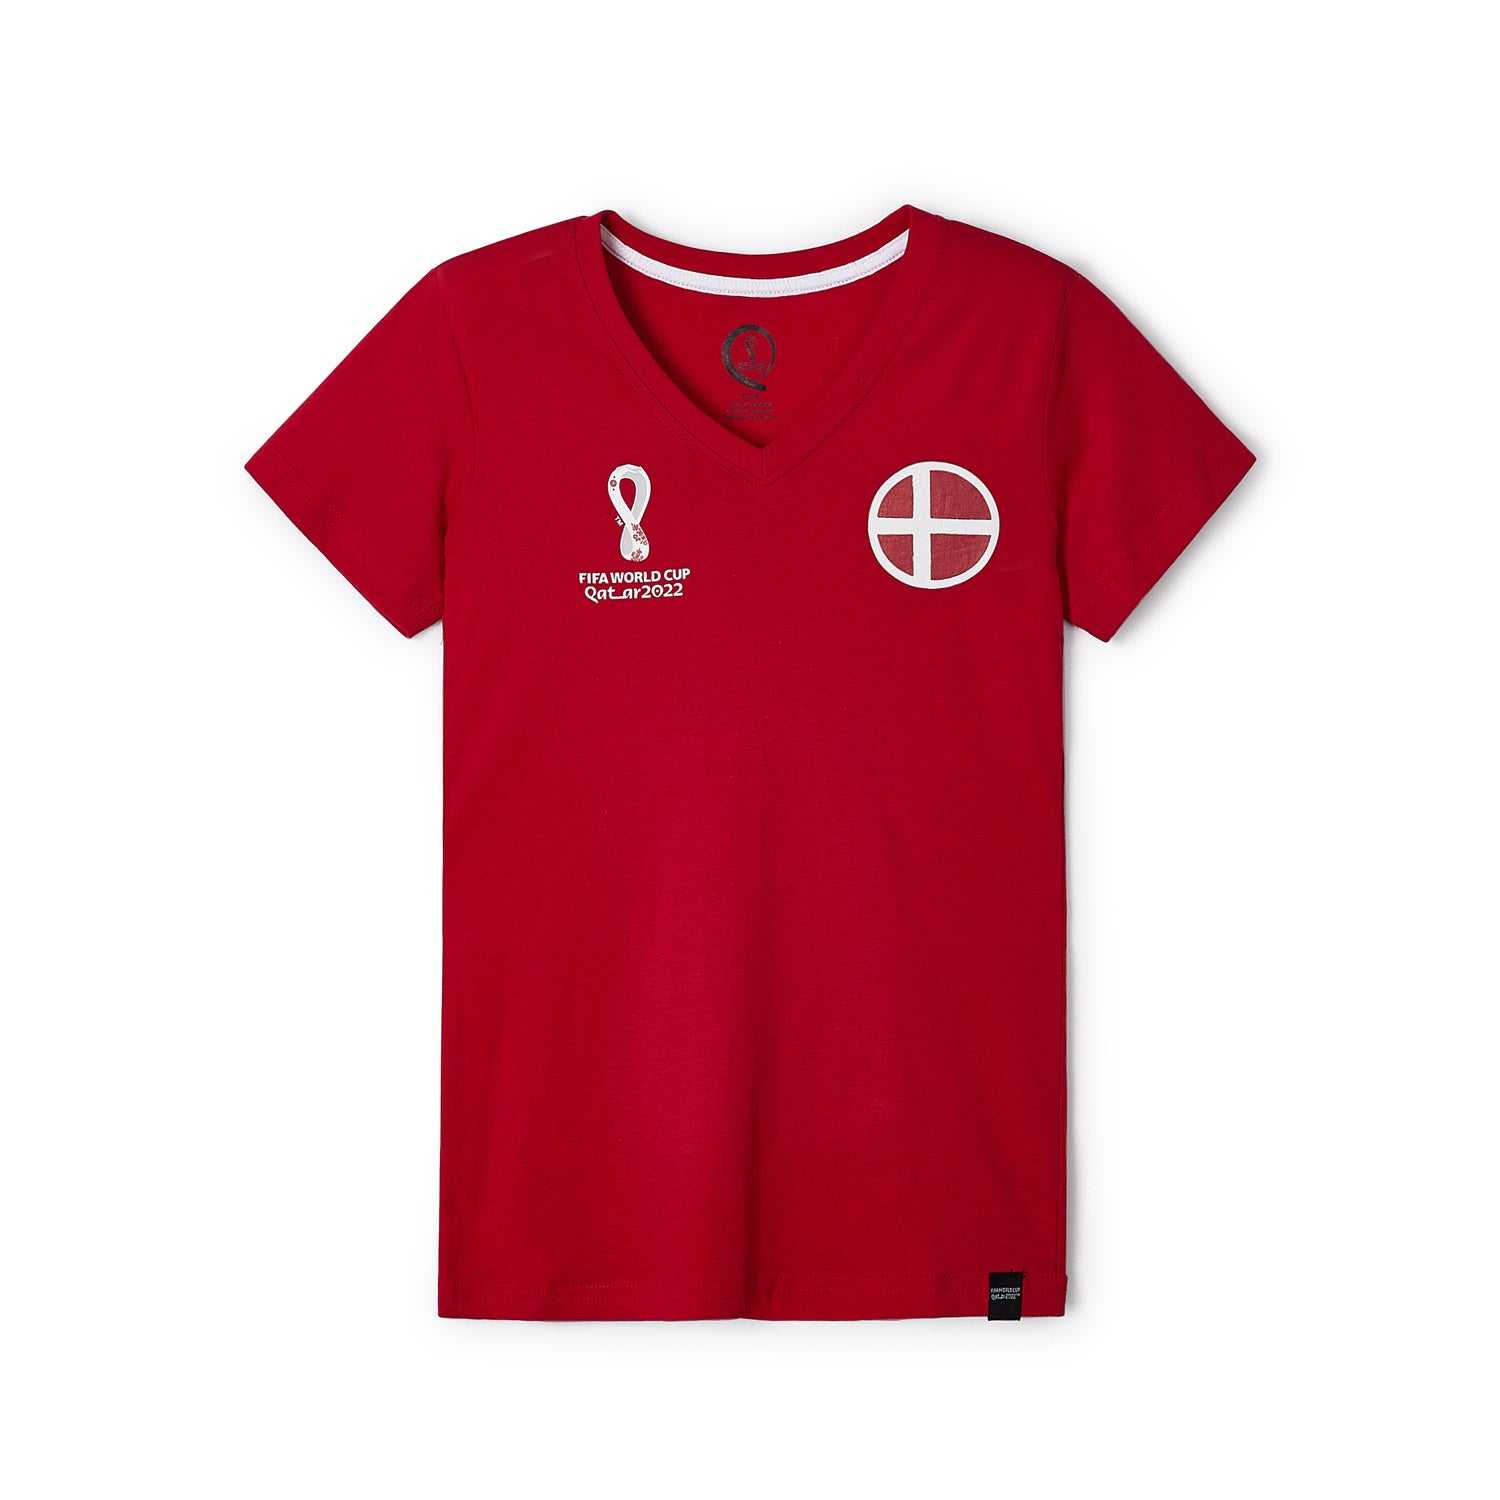 2022 World Cup Denmark Red T-Shirt - Women's